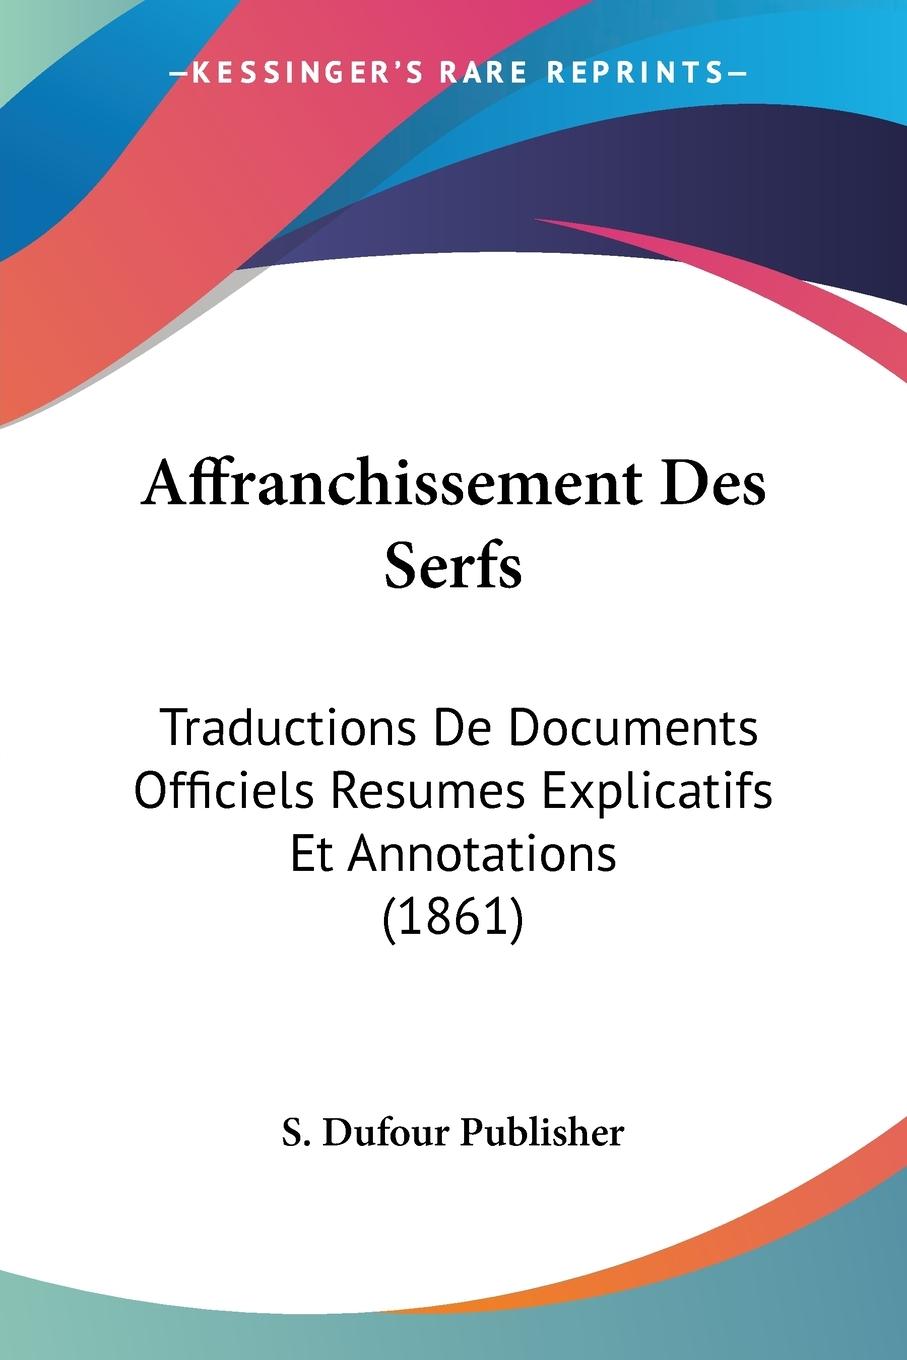 Affranchissement Des Serfs - S. Dufour Publisher